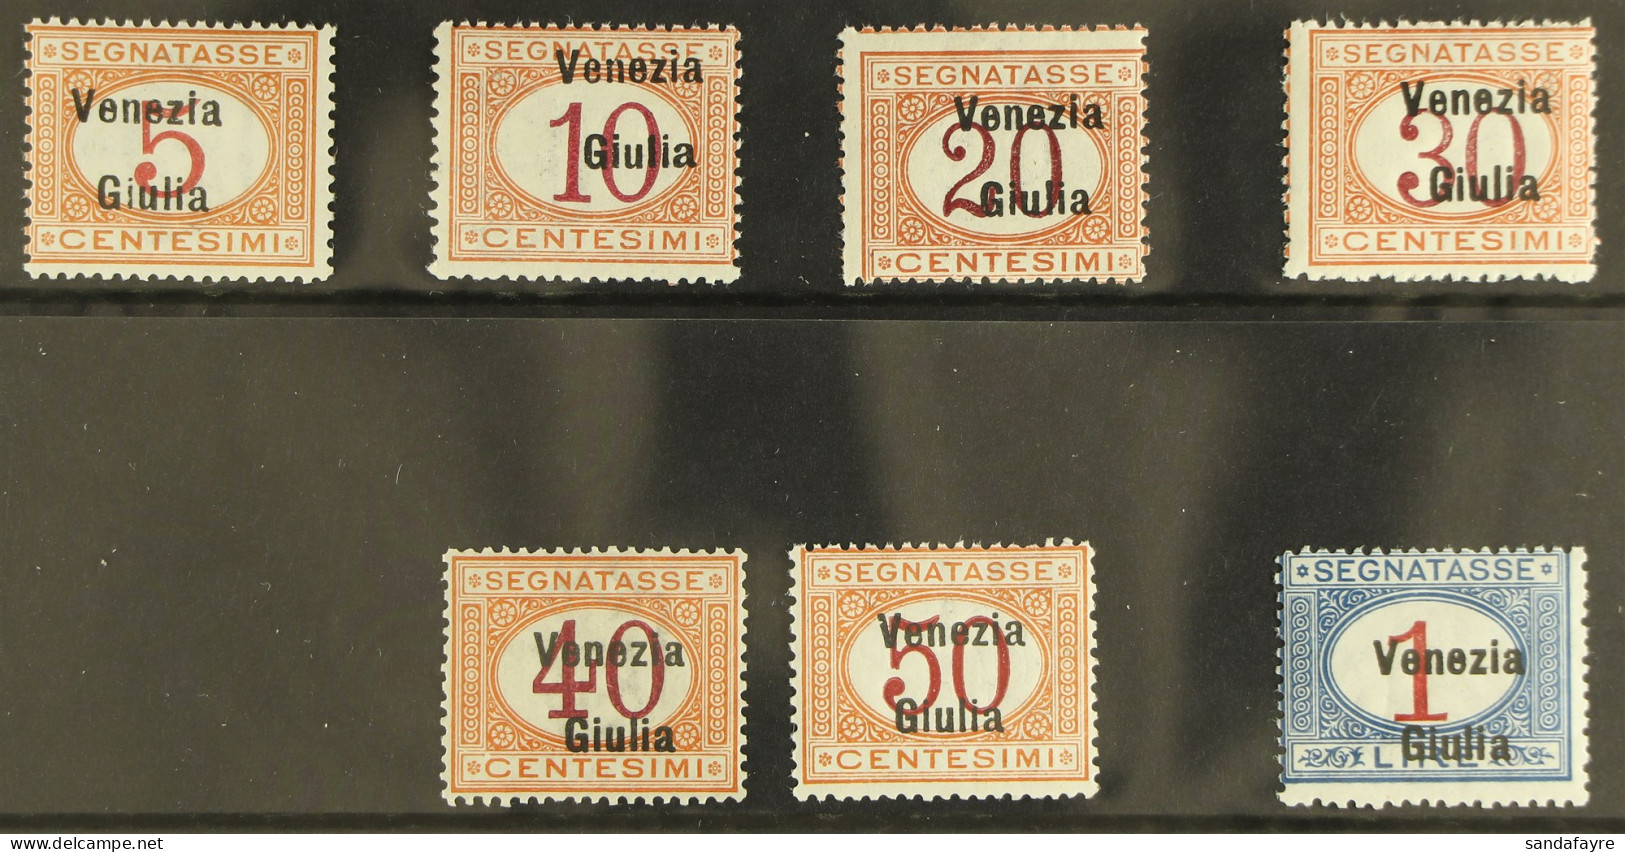 VENEZIA GIULIA Postage Due 1918 Complete Set, Sassone S4, Never Hinged Mint. Cat. ??2500 (7 Stamps) - Non Classés